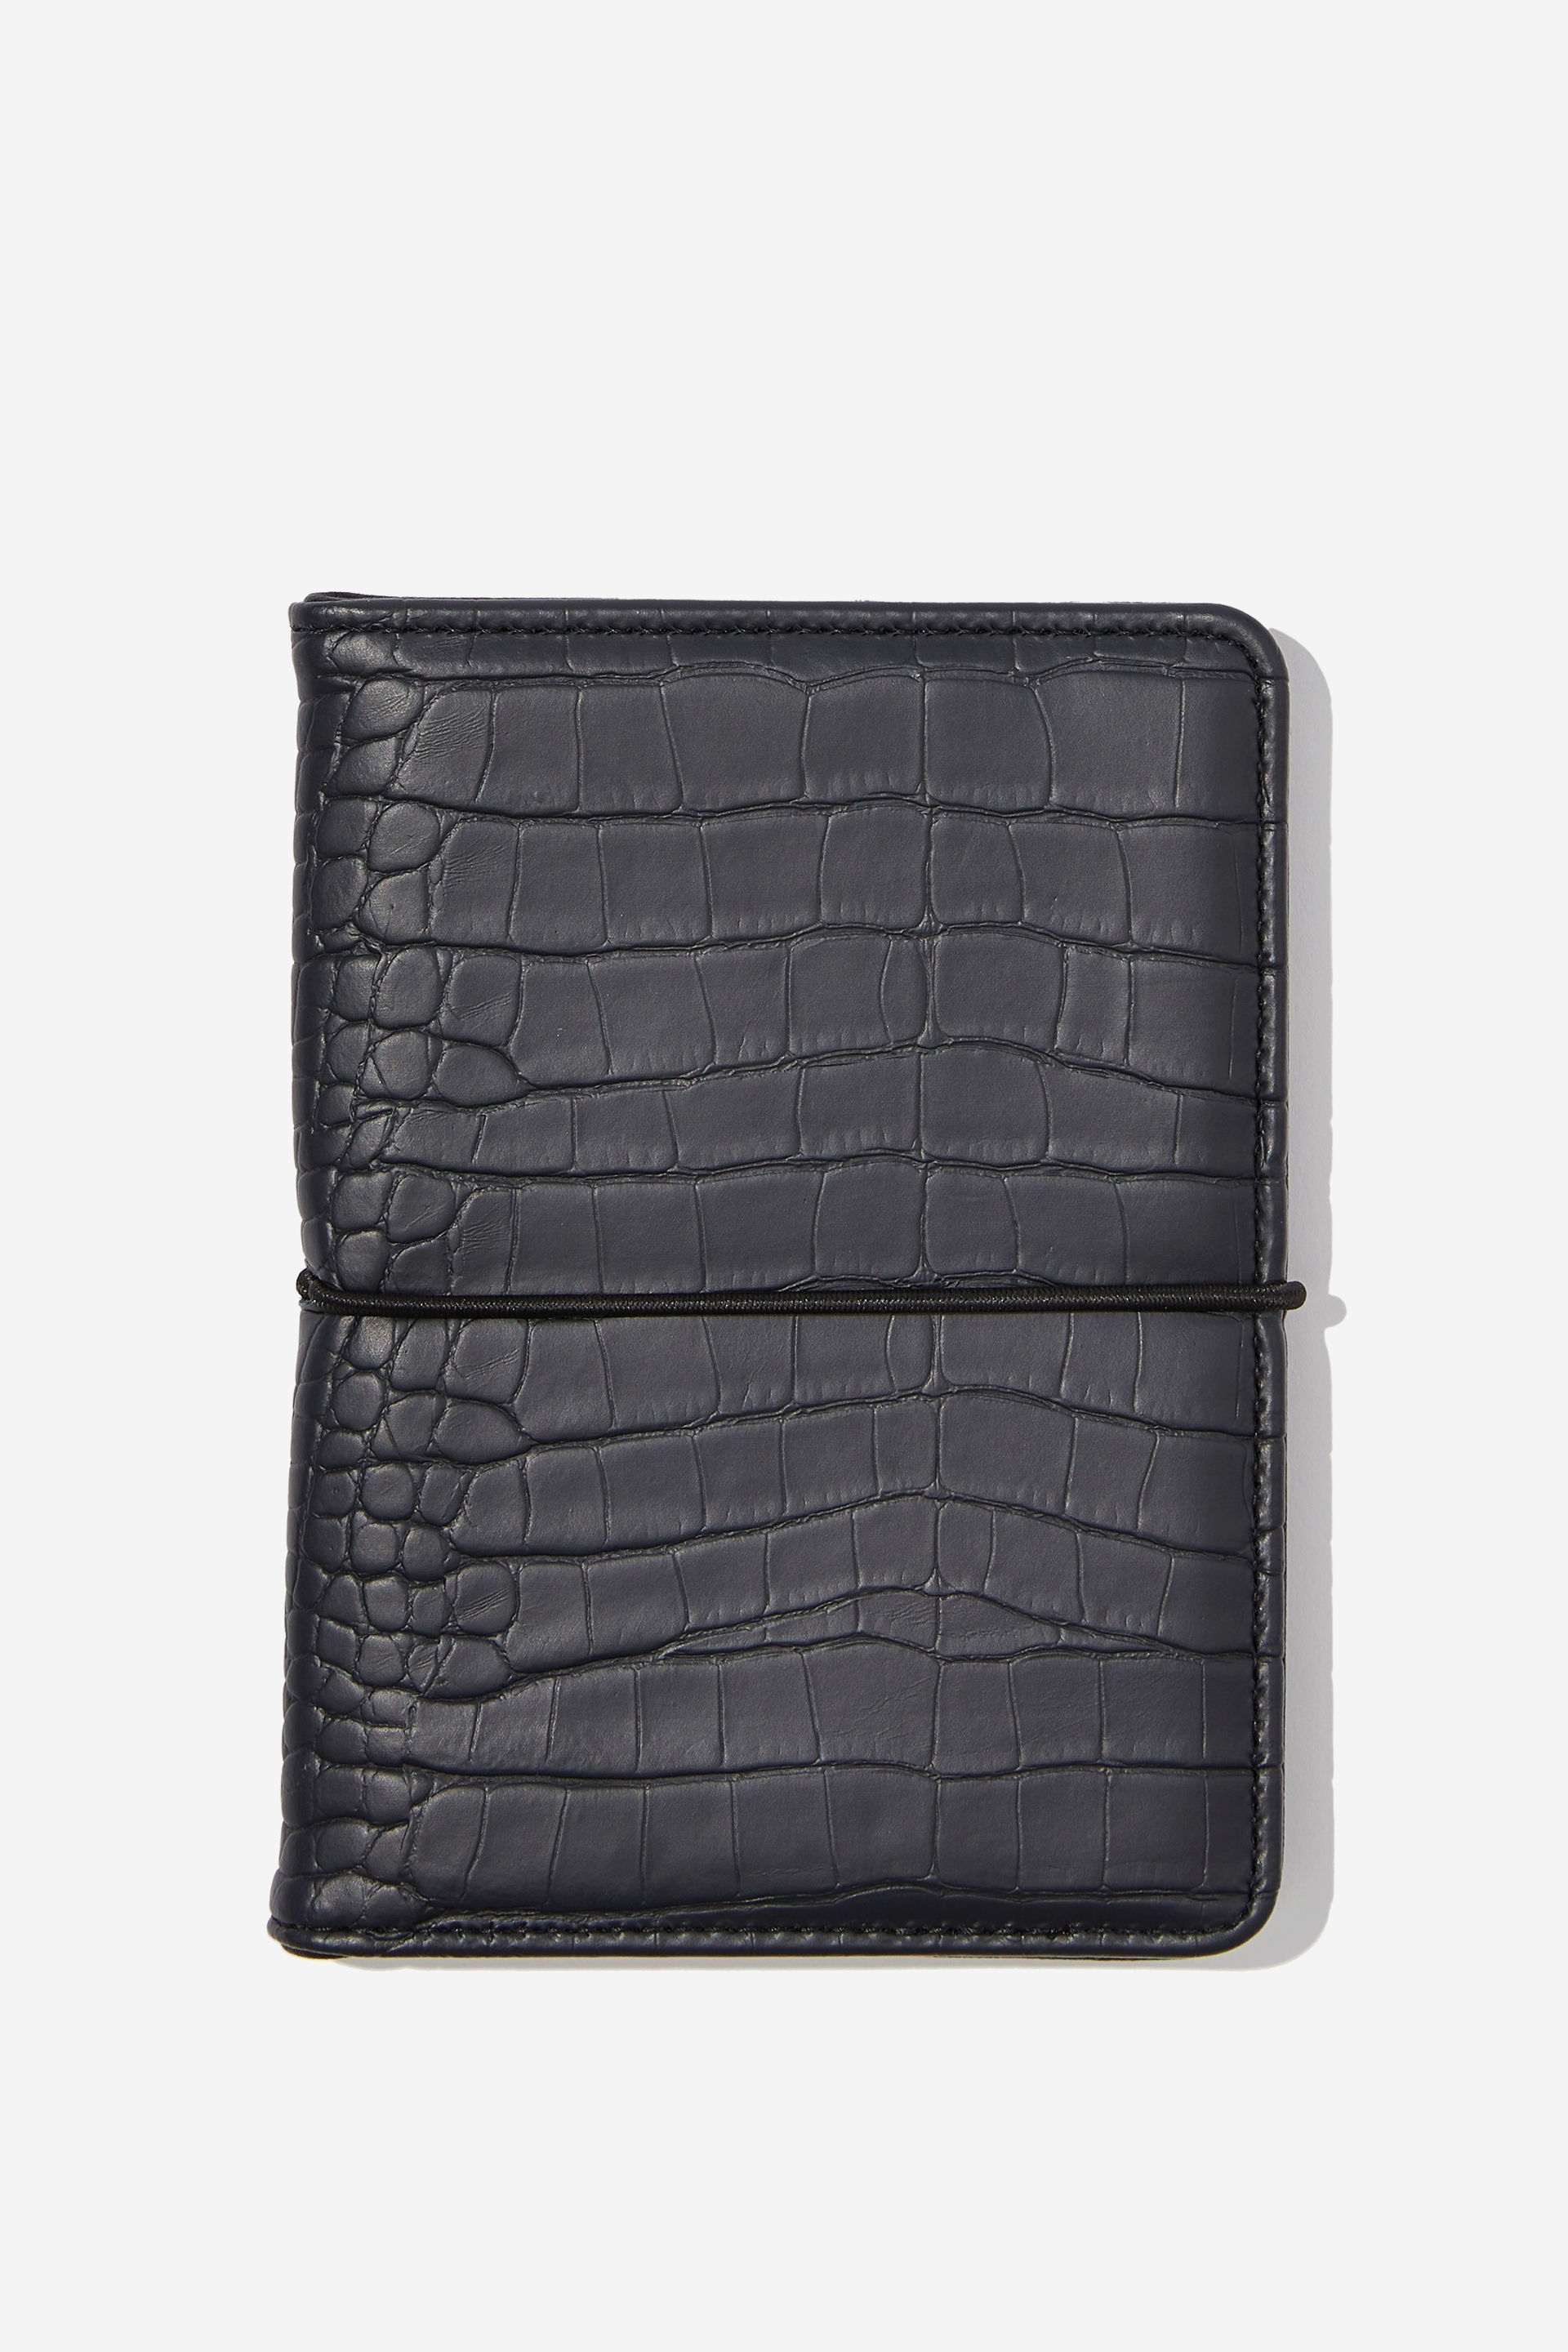 Typo - Off The Grid Passport Holder - Black textured